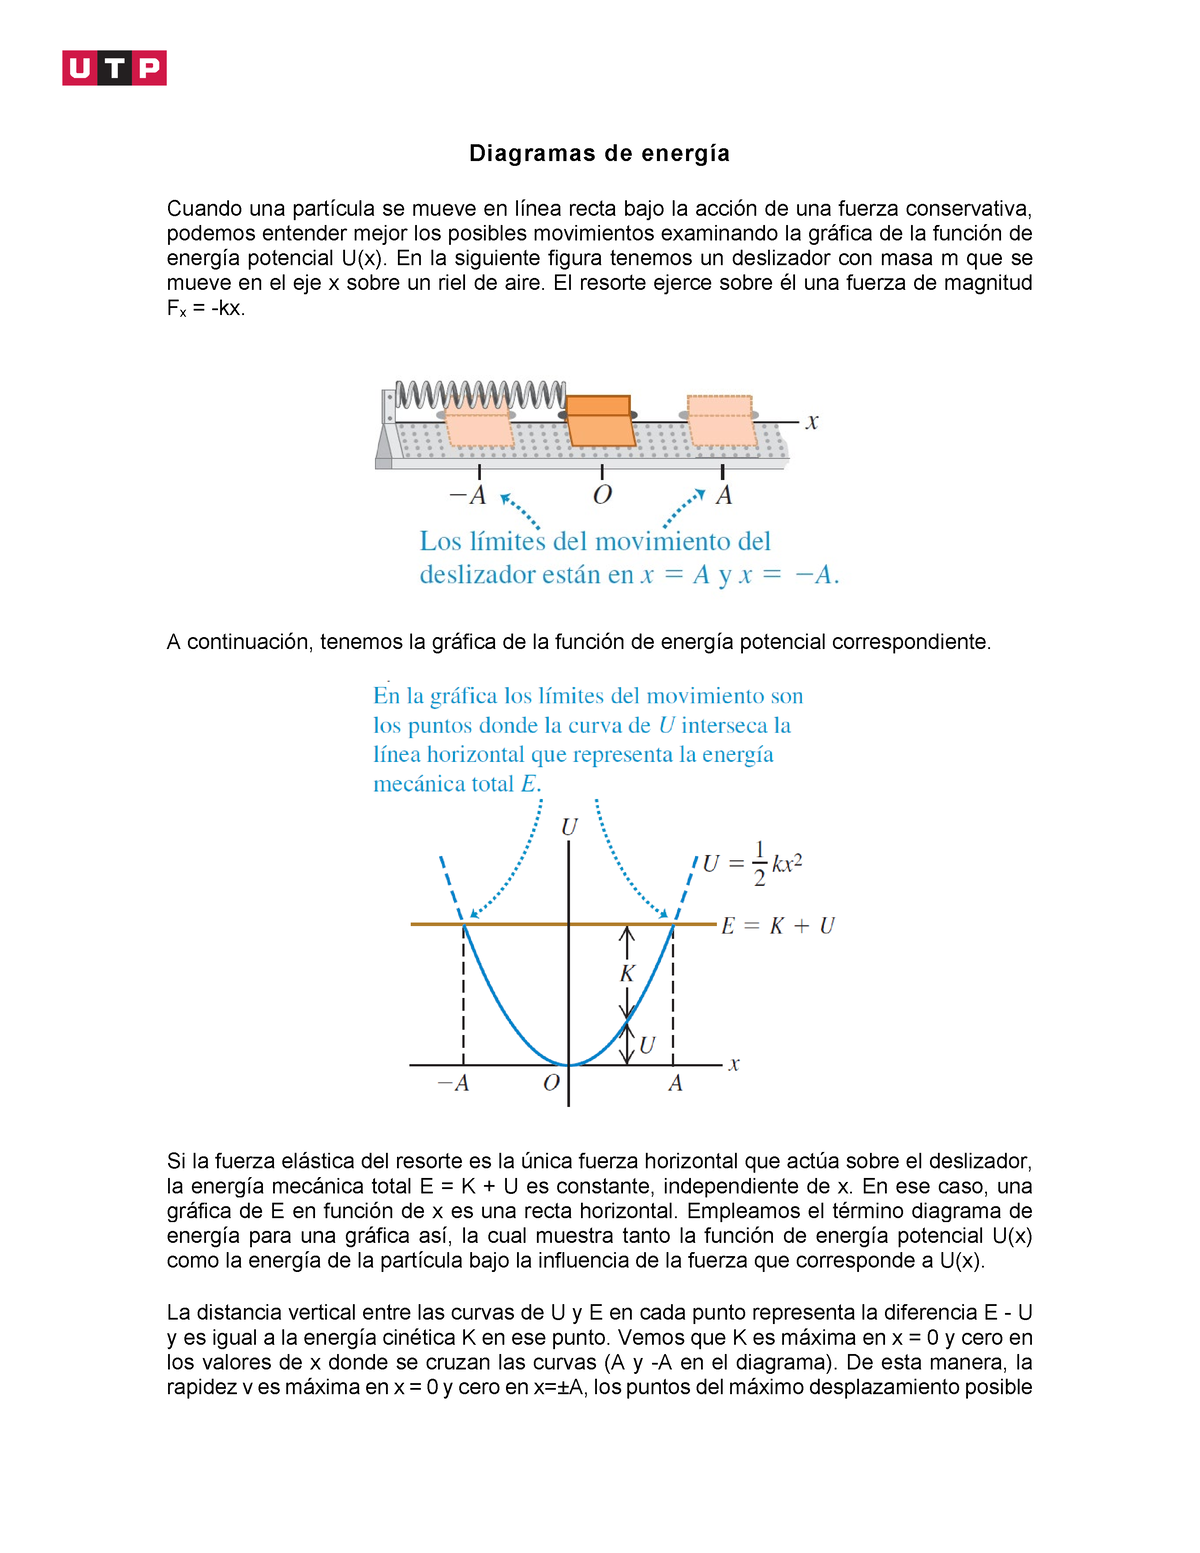 Diagramas de energia - dfgdfgAS asa - Diagramas de energía Cuando una  partícula se mueve en línea - Studocu